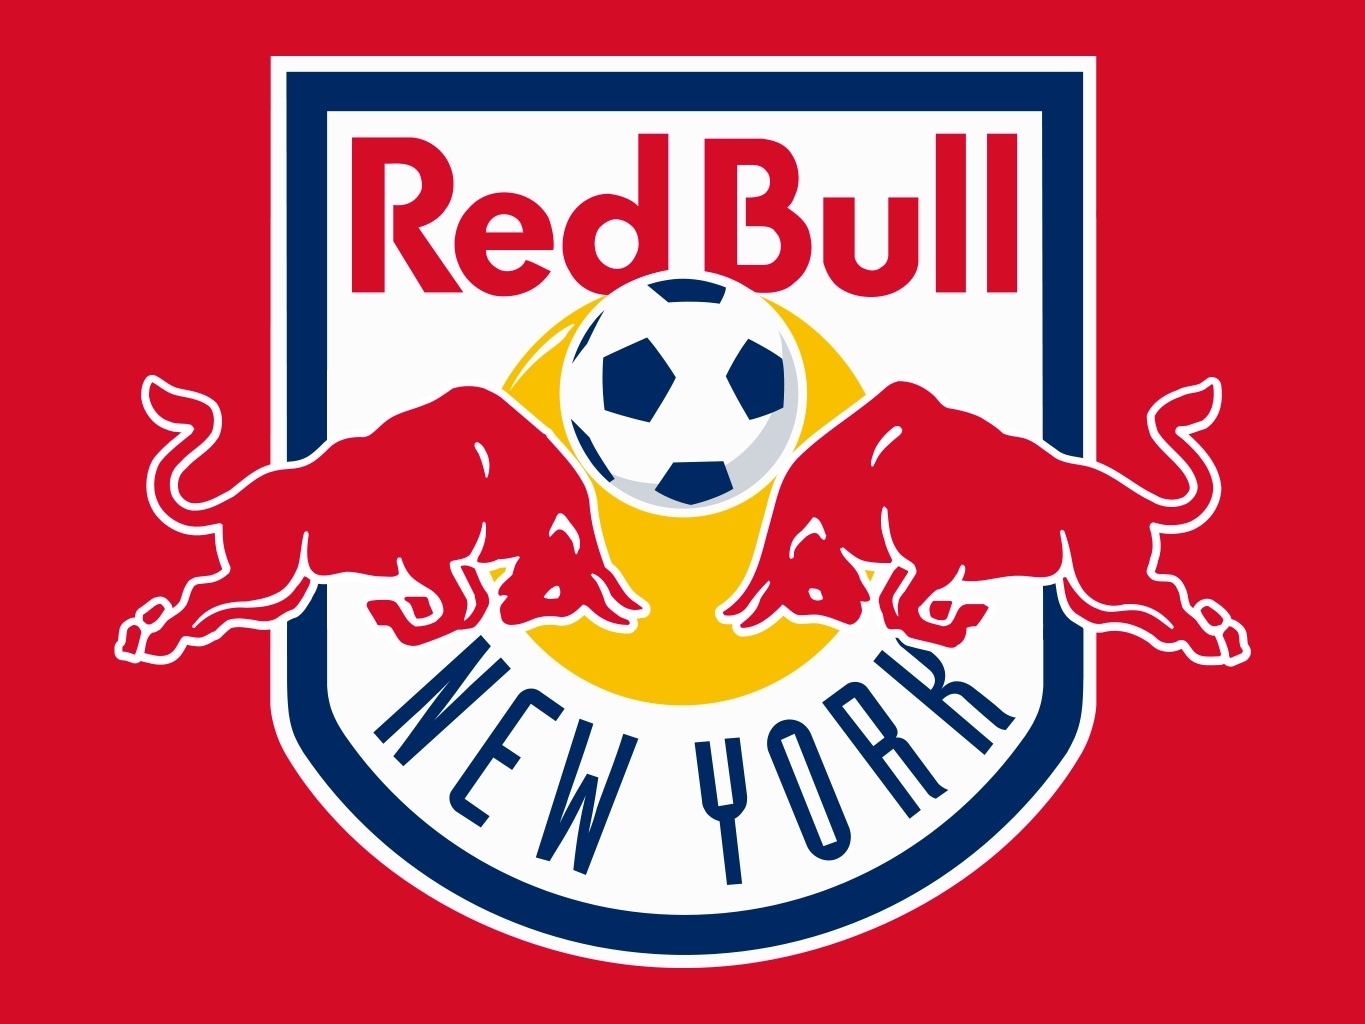 New York Red Bulls | Pro Sports Teams Wiki | FANDOM powered by Wikia